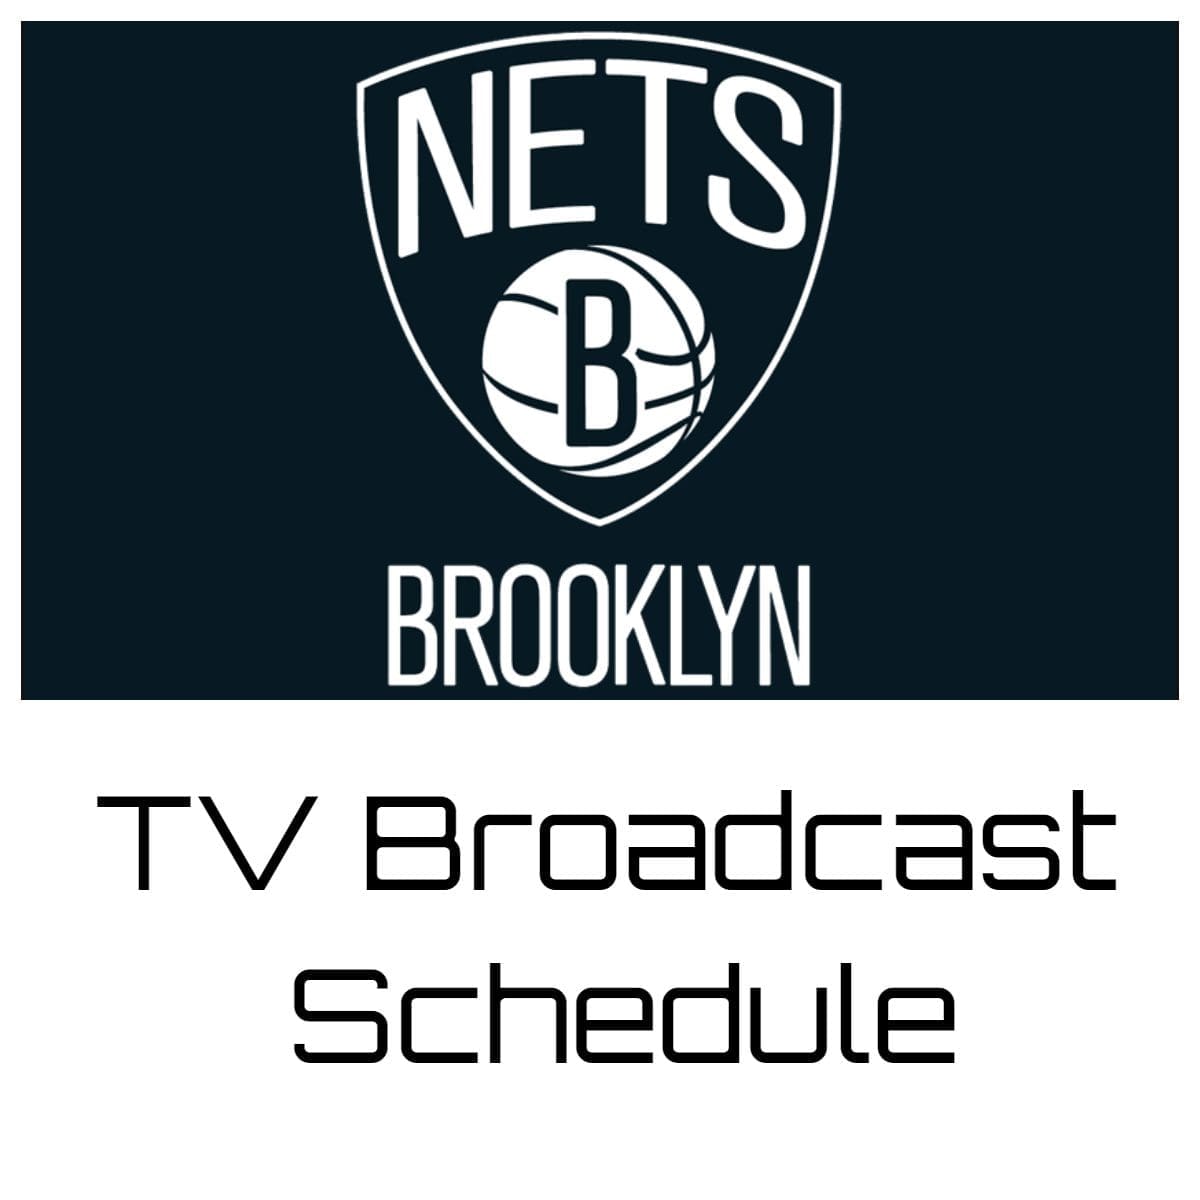 brooklyn nets schedule 2022-23